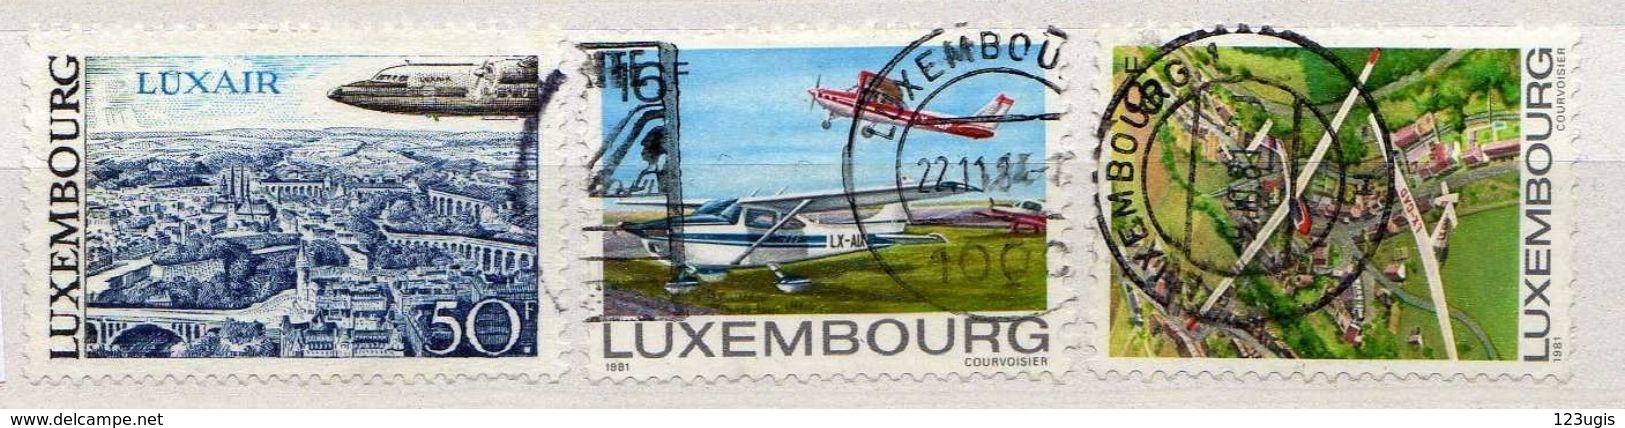 Luxemburg Lot, Gestempelt, Flugpost / Flugzeug / Air Mail / Planes [170717XXI] - Usati